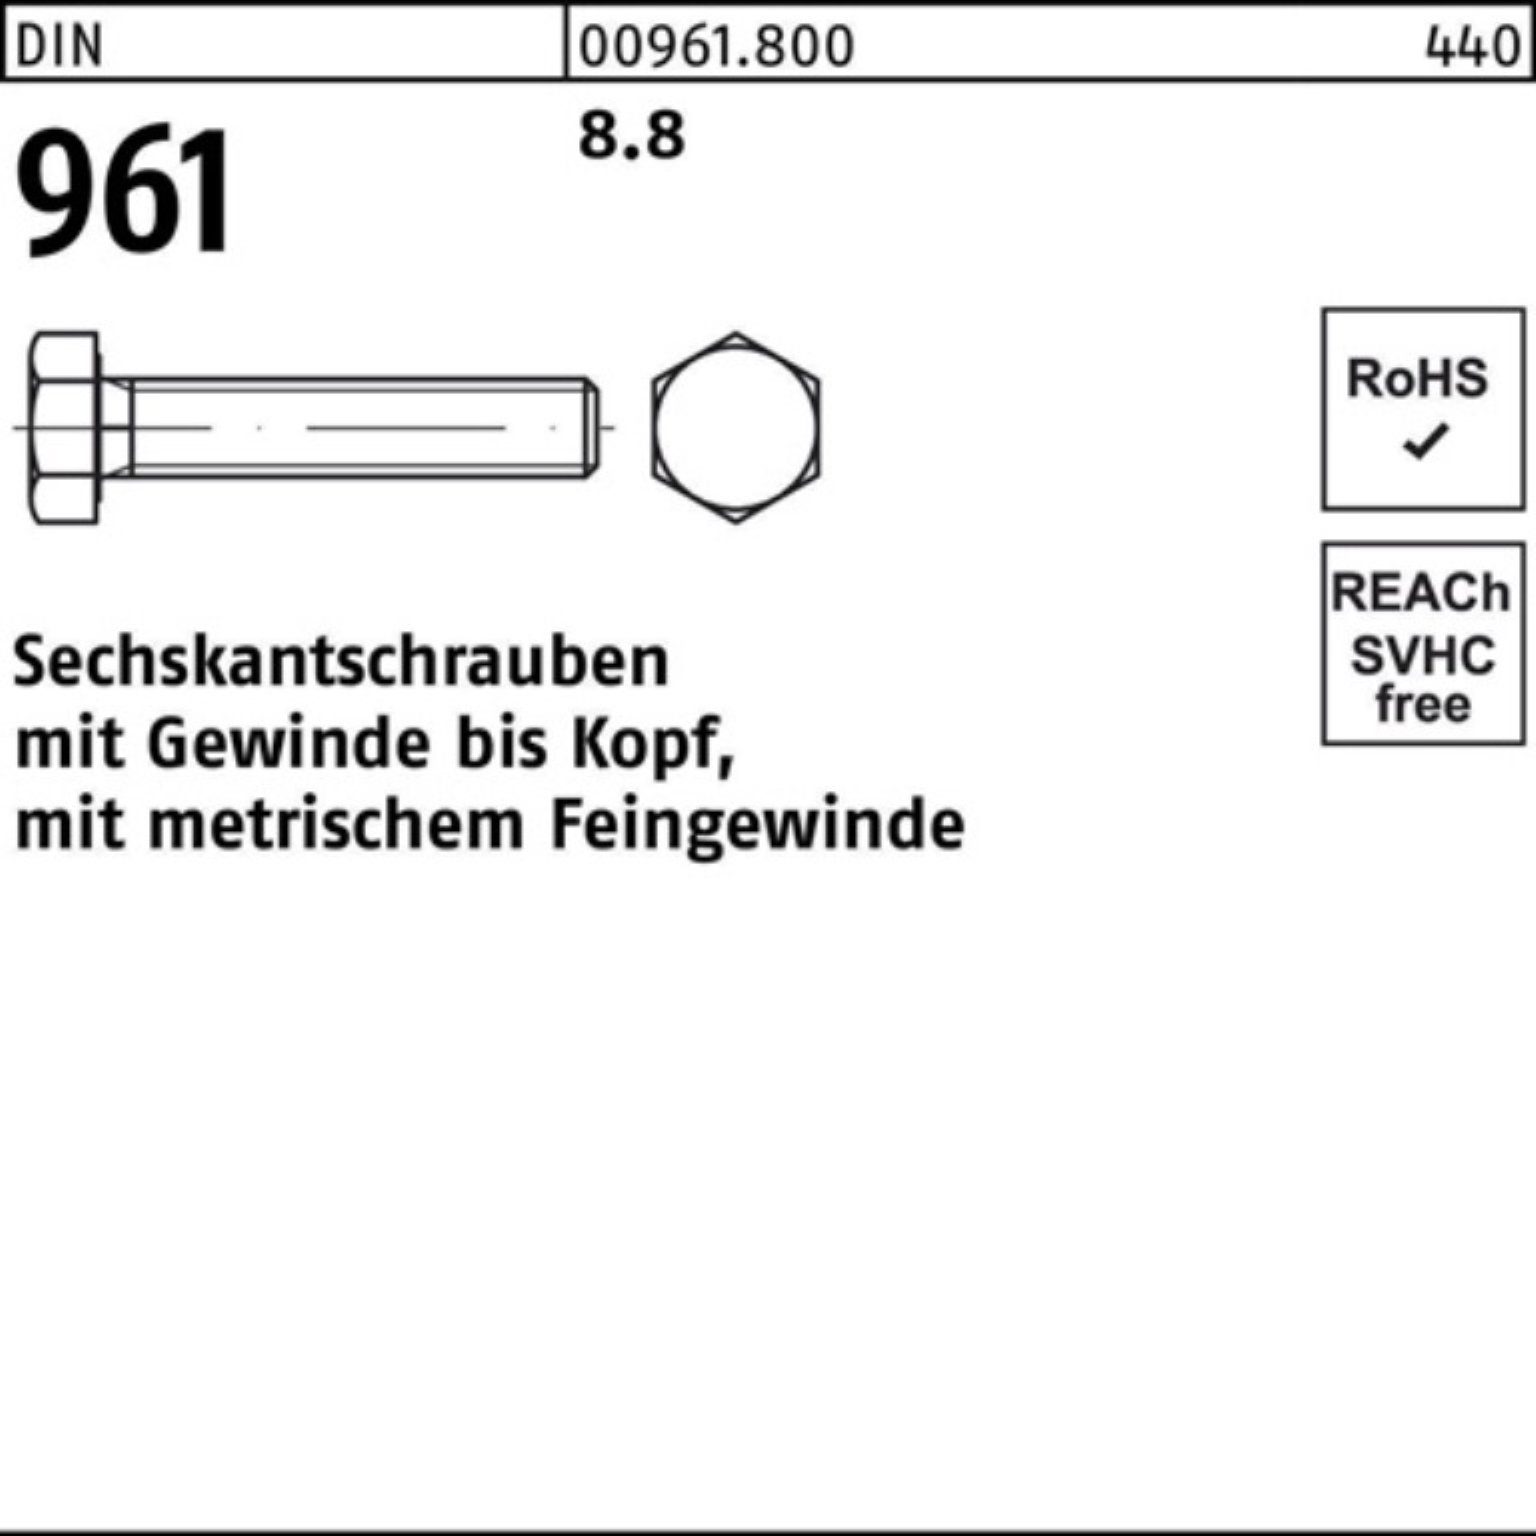 Reyher Sechskantschraube 100er Pack Sechskantschraube 25 Stück 961 DIN M14x1,5x DIN 8.8 VG 100